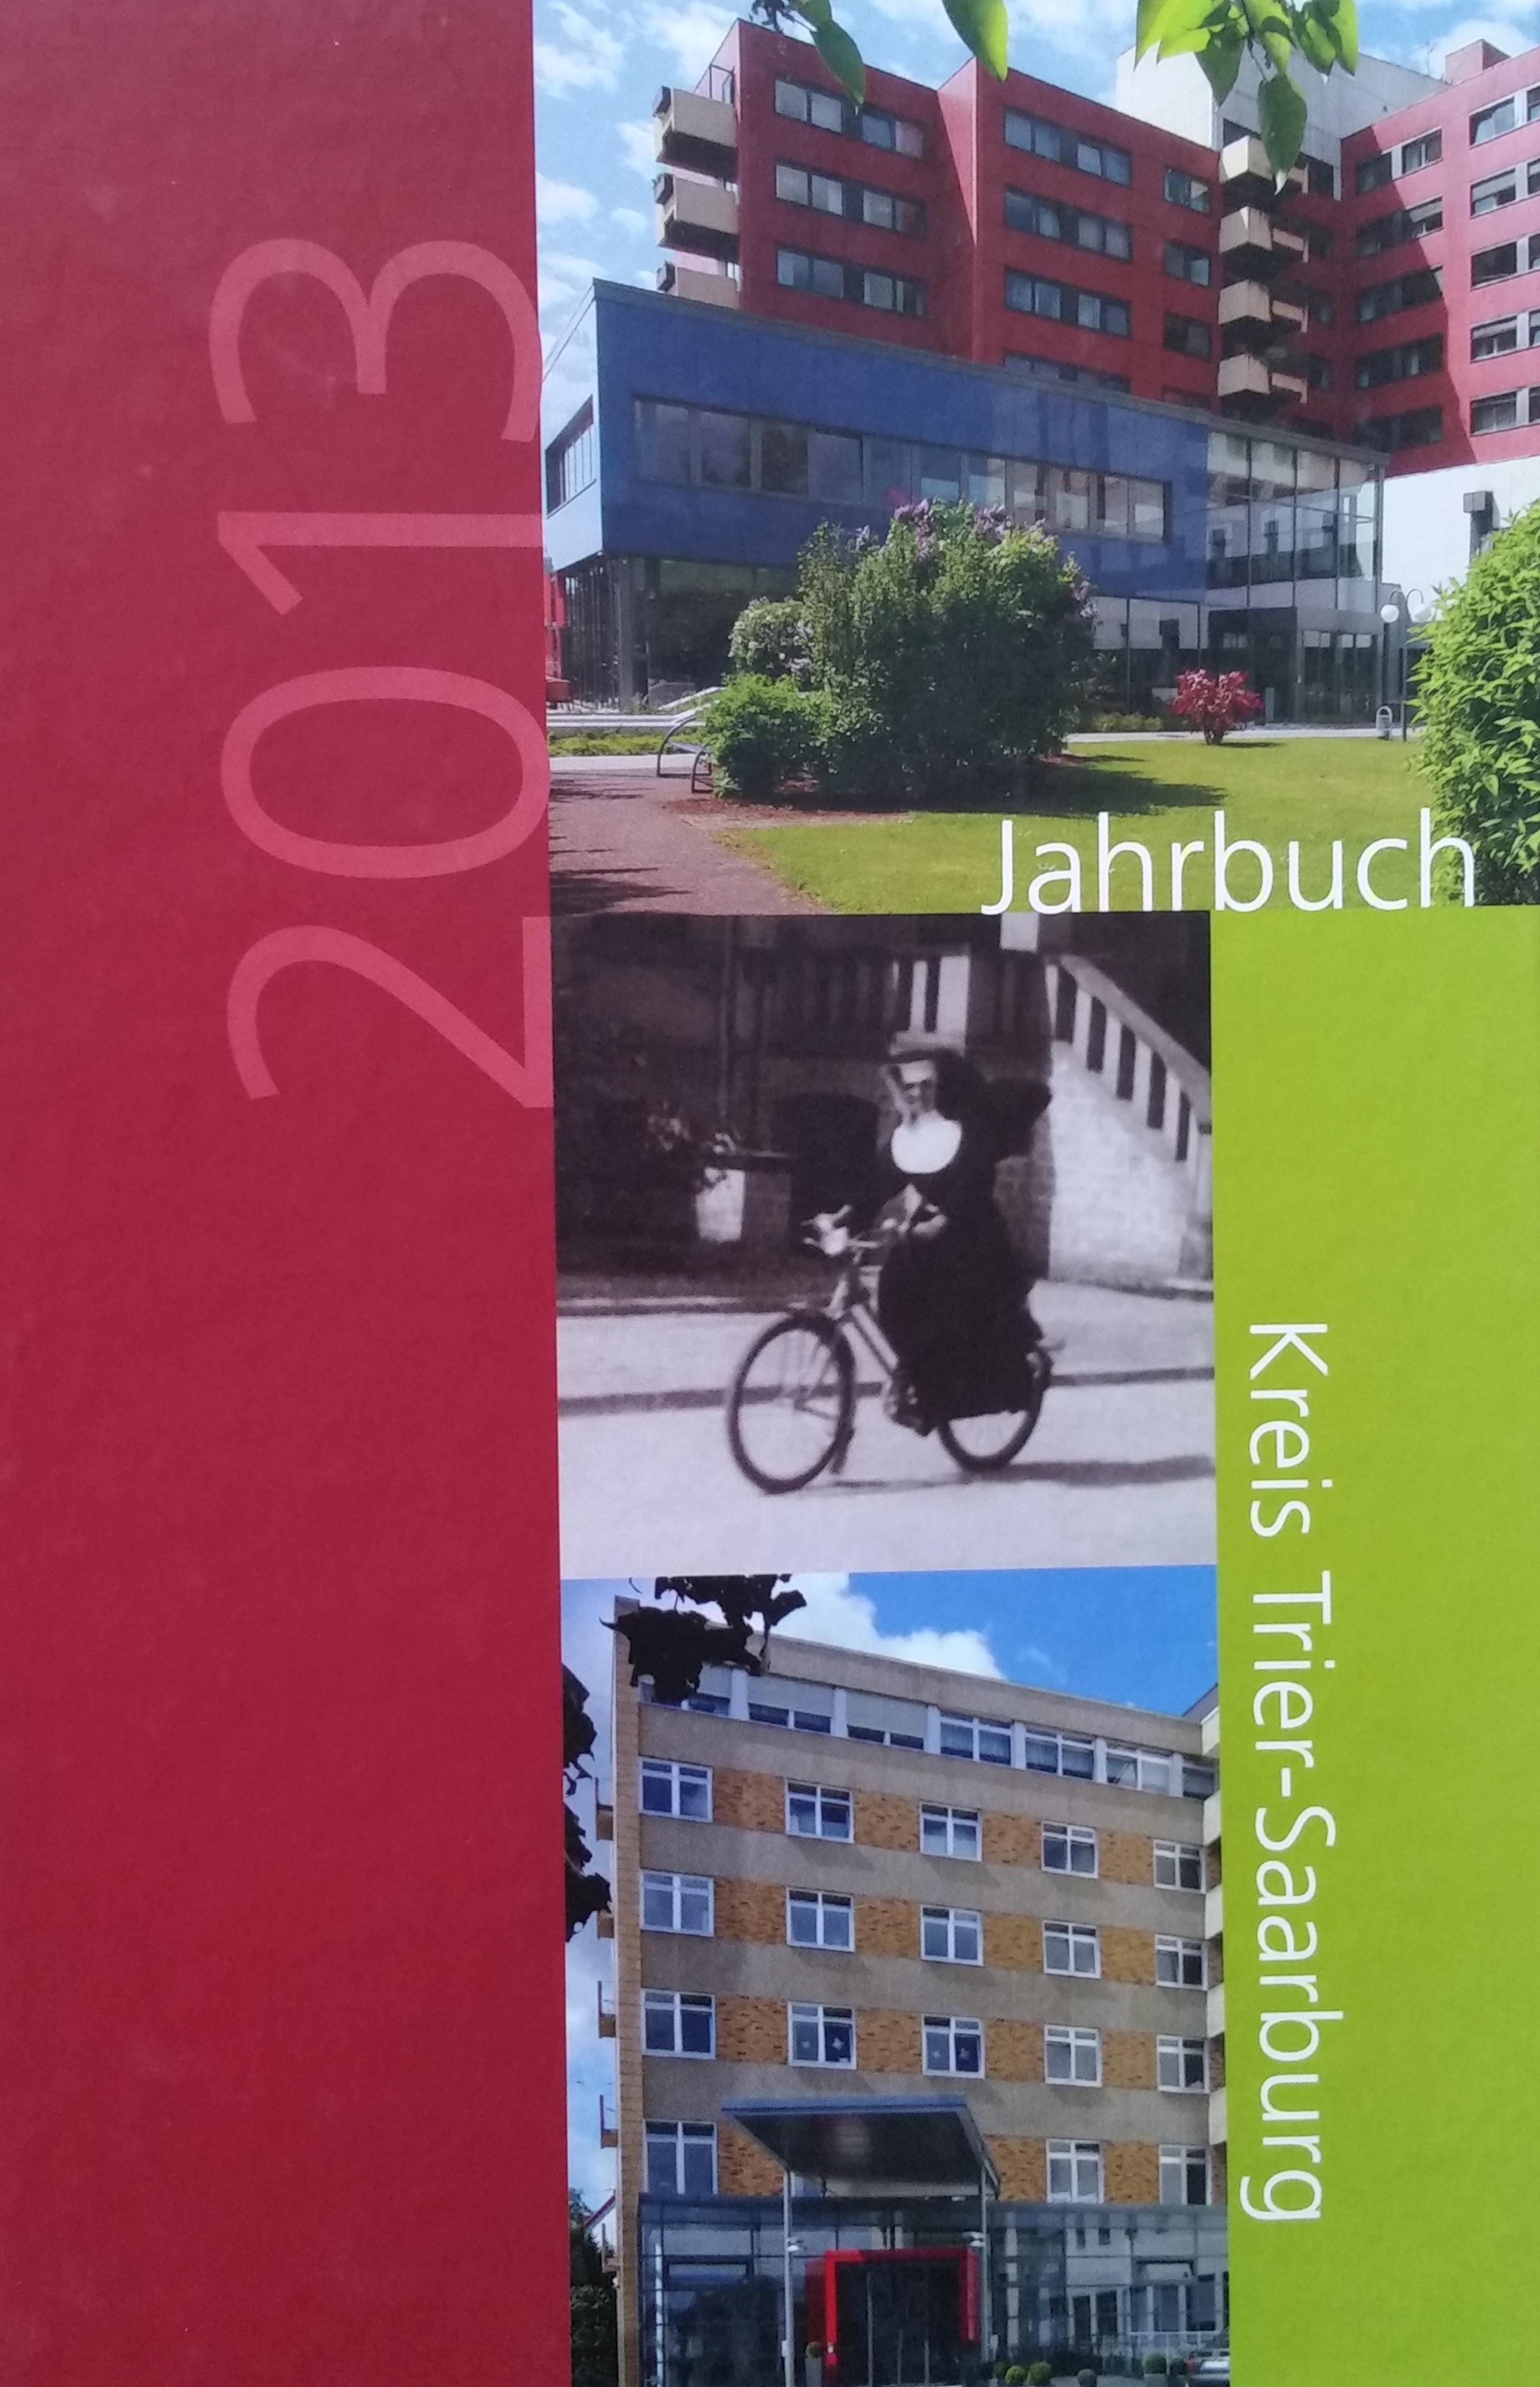 Jahrbuch 2013 Kreis Trier-Saarburg Bucheinband vorne